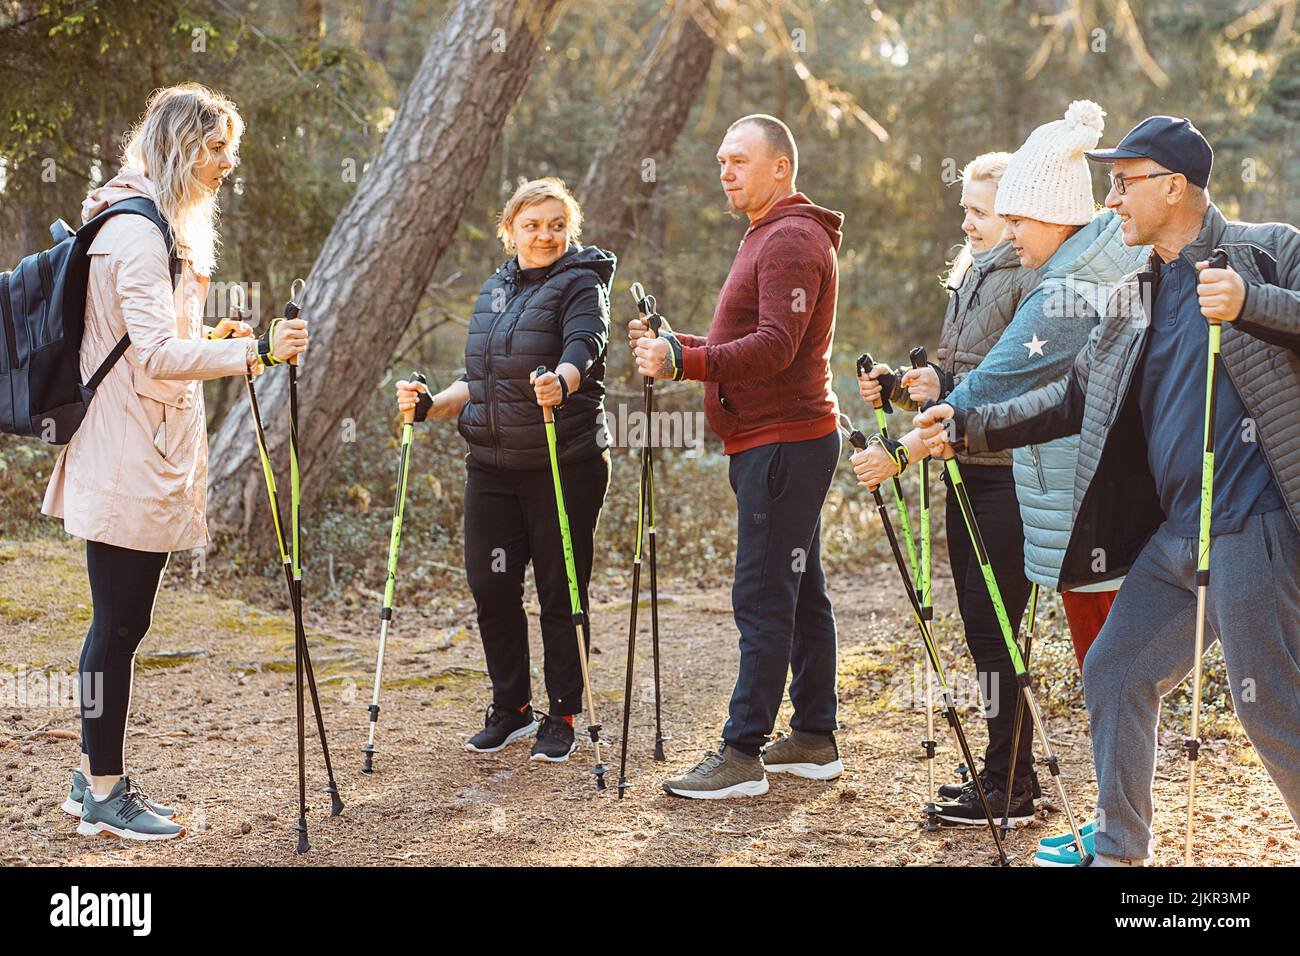 Professionelle Trainerin, Trainerin mit Gruppenmitarbeiten unterrichten skandinavisches, Nordic Walking mit Stöcken im Wald Stockfoto